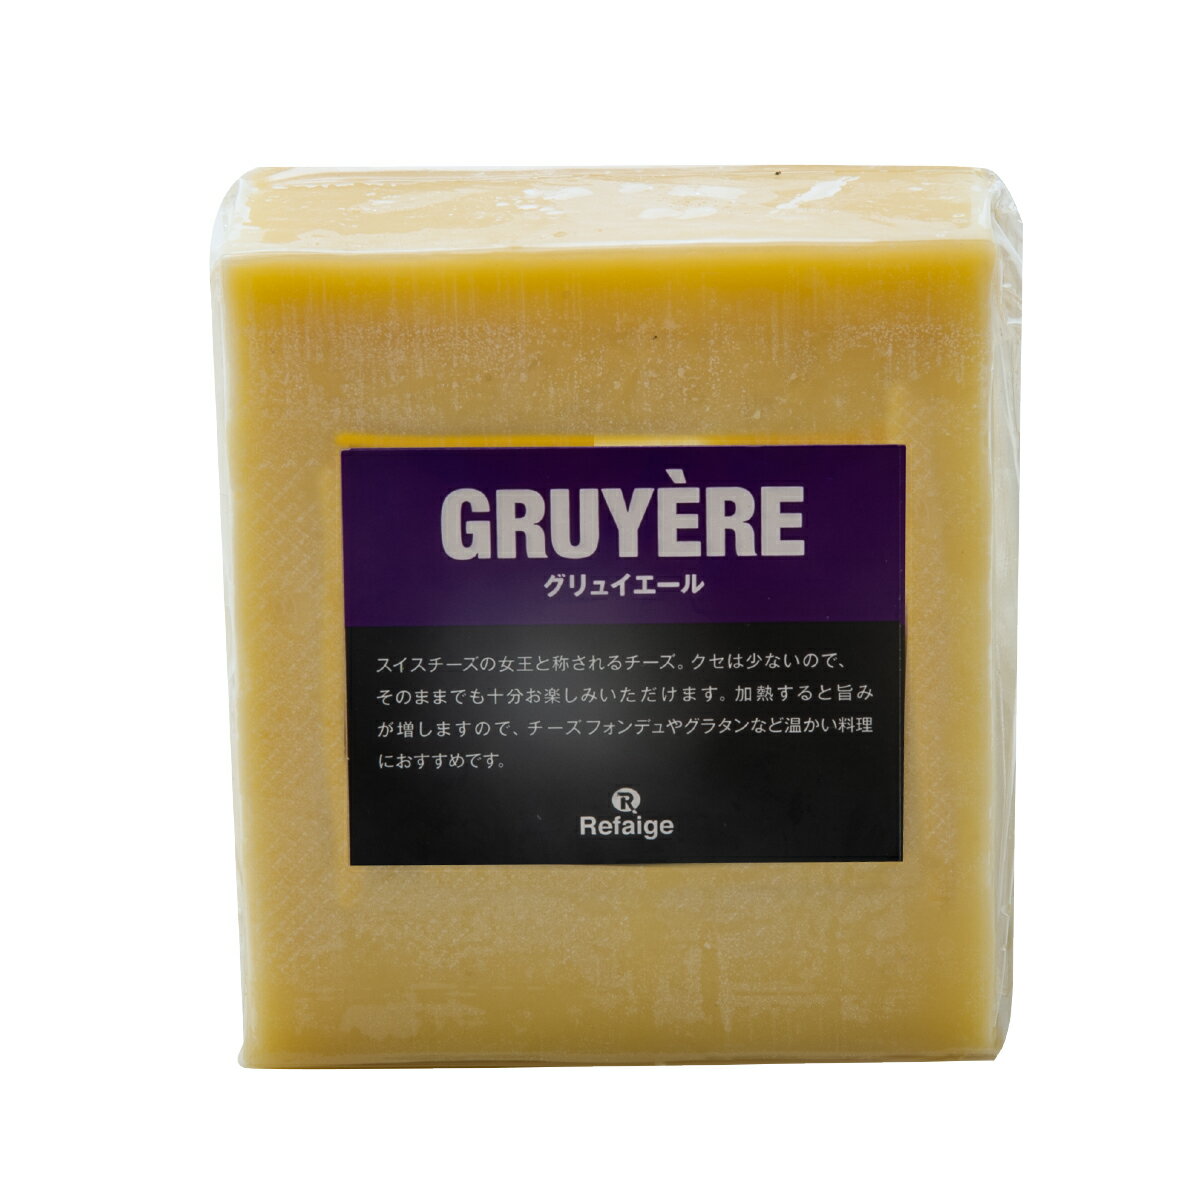 グリュイエール グリュイエールはスイスを代表するチーズの一つで、EUのAOP認定チーズです。大量の牛乳を使用し、巨大な円盤状の型で作られ熟成させます。硬質・乳白色で、ほのかにナッツの香りがするのが特徴で、スイスチーズの女王と称されている人気のチーズです。そのままでも美味しいですが、加熱すると旨みが引き出されるのでオーブン料理がおすすめです。エメンタールと共に鍋で溶かして食べるチーズフォンデュは有名です。 種類別 ナチュラルチーズ 原材料名 生乳、食塩 原産国 スイス 内容量 約500g タイプ ハード 加工 カット 料理 チーズフォンデュやキッシュなど 合うお酒 ウイスキーやビールなど 個性 ★★☆ 塩味 ★☆☆ 配送 クール便（商品は真空パック） 賞味期限 お届け後60日以上（未開封時） 保存方法 要冷蔵(10℃以下)乾燥が大敵。 密閉容器にいれて冷蔵庫の野菜室で保存がおすすめです。 開封後は賞味期限に関わらずお早めにお召し上がりください。 栄養成分表示 熱量400kcal、たんぱく質27.0g、脂質32.0g、炭水化物0.5g、食塩相当量1.5g＊100gあたり／推定値 製造・販売者 株式会社リフェージュ　／　埼玉県戸田市美女木5-21-7 ＜仕入・製造・検査・出荷まで自社工場一貫体制にて行っております。＞ 不定貫について 1kgあたり税込6,458円にて再計算させて頂きます。